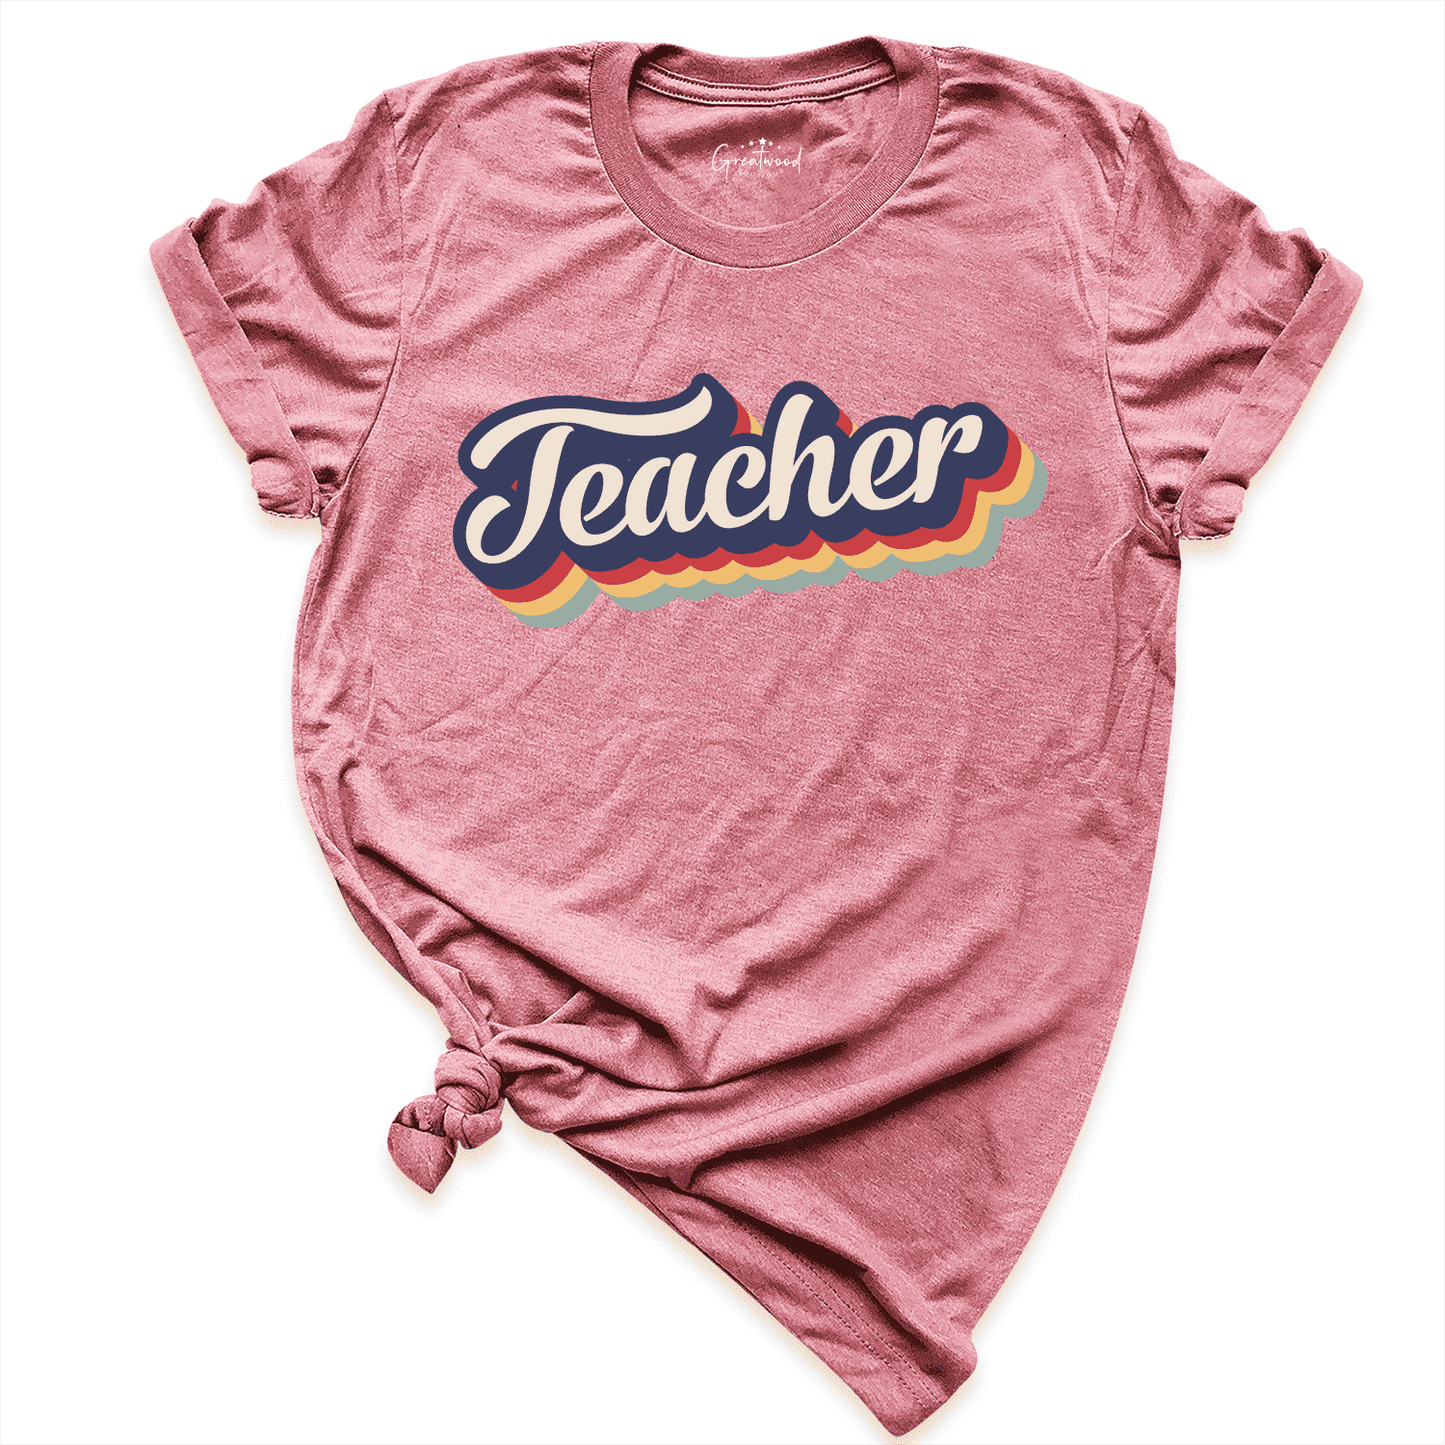 Retro Teacher Shirt Mauve - Greatwood Boutique